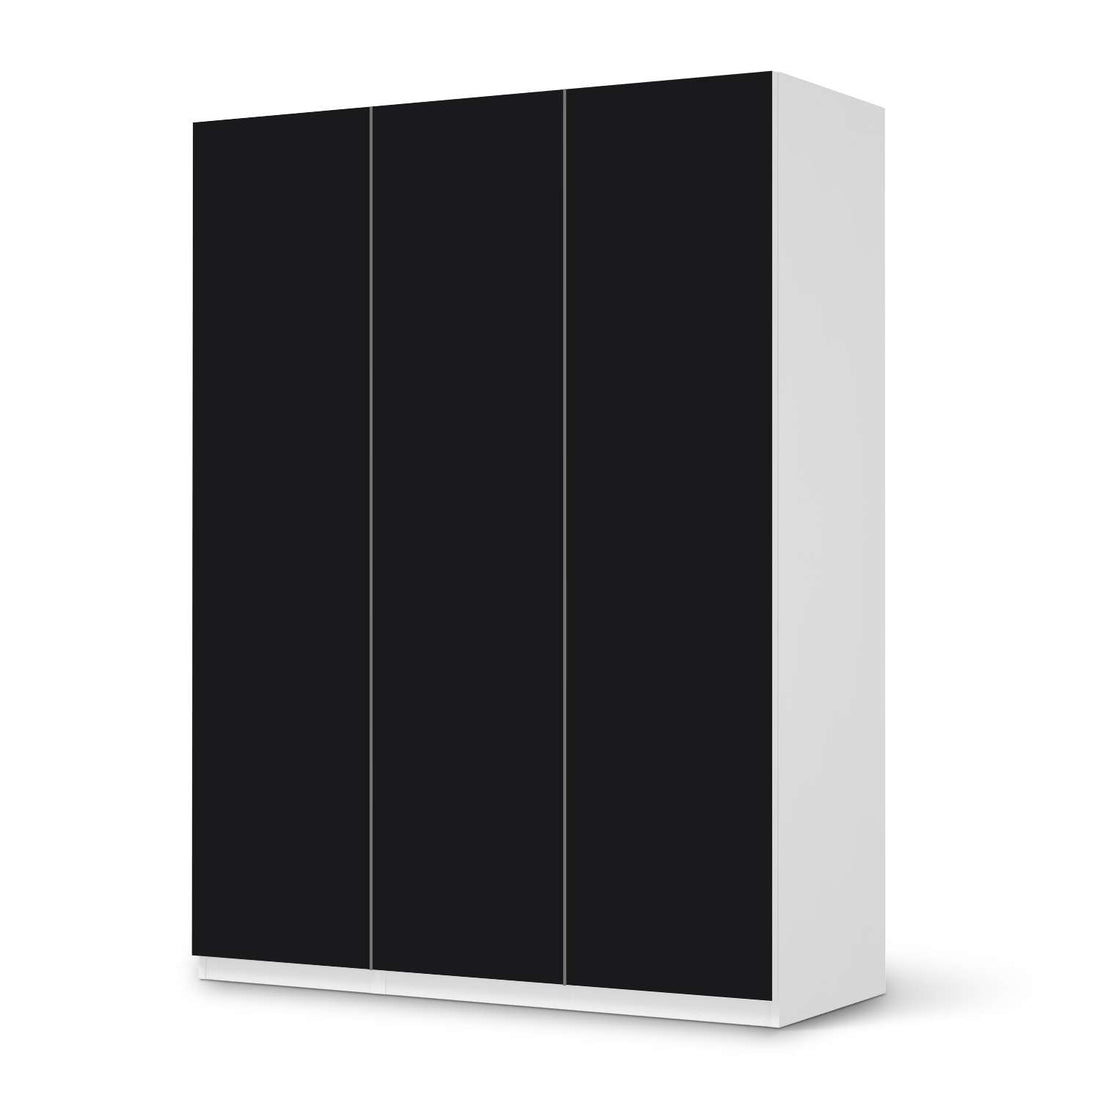 Folie für Möbel Schwarz - IKEA Pax Schrank 201 cm Höhe - 3 Türen - weiss